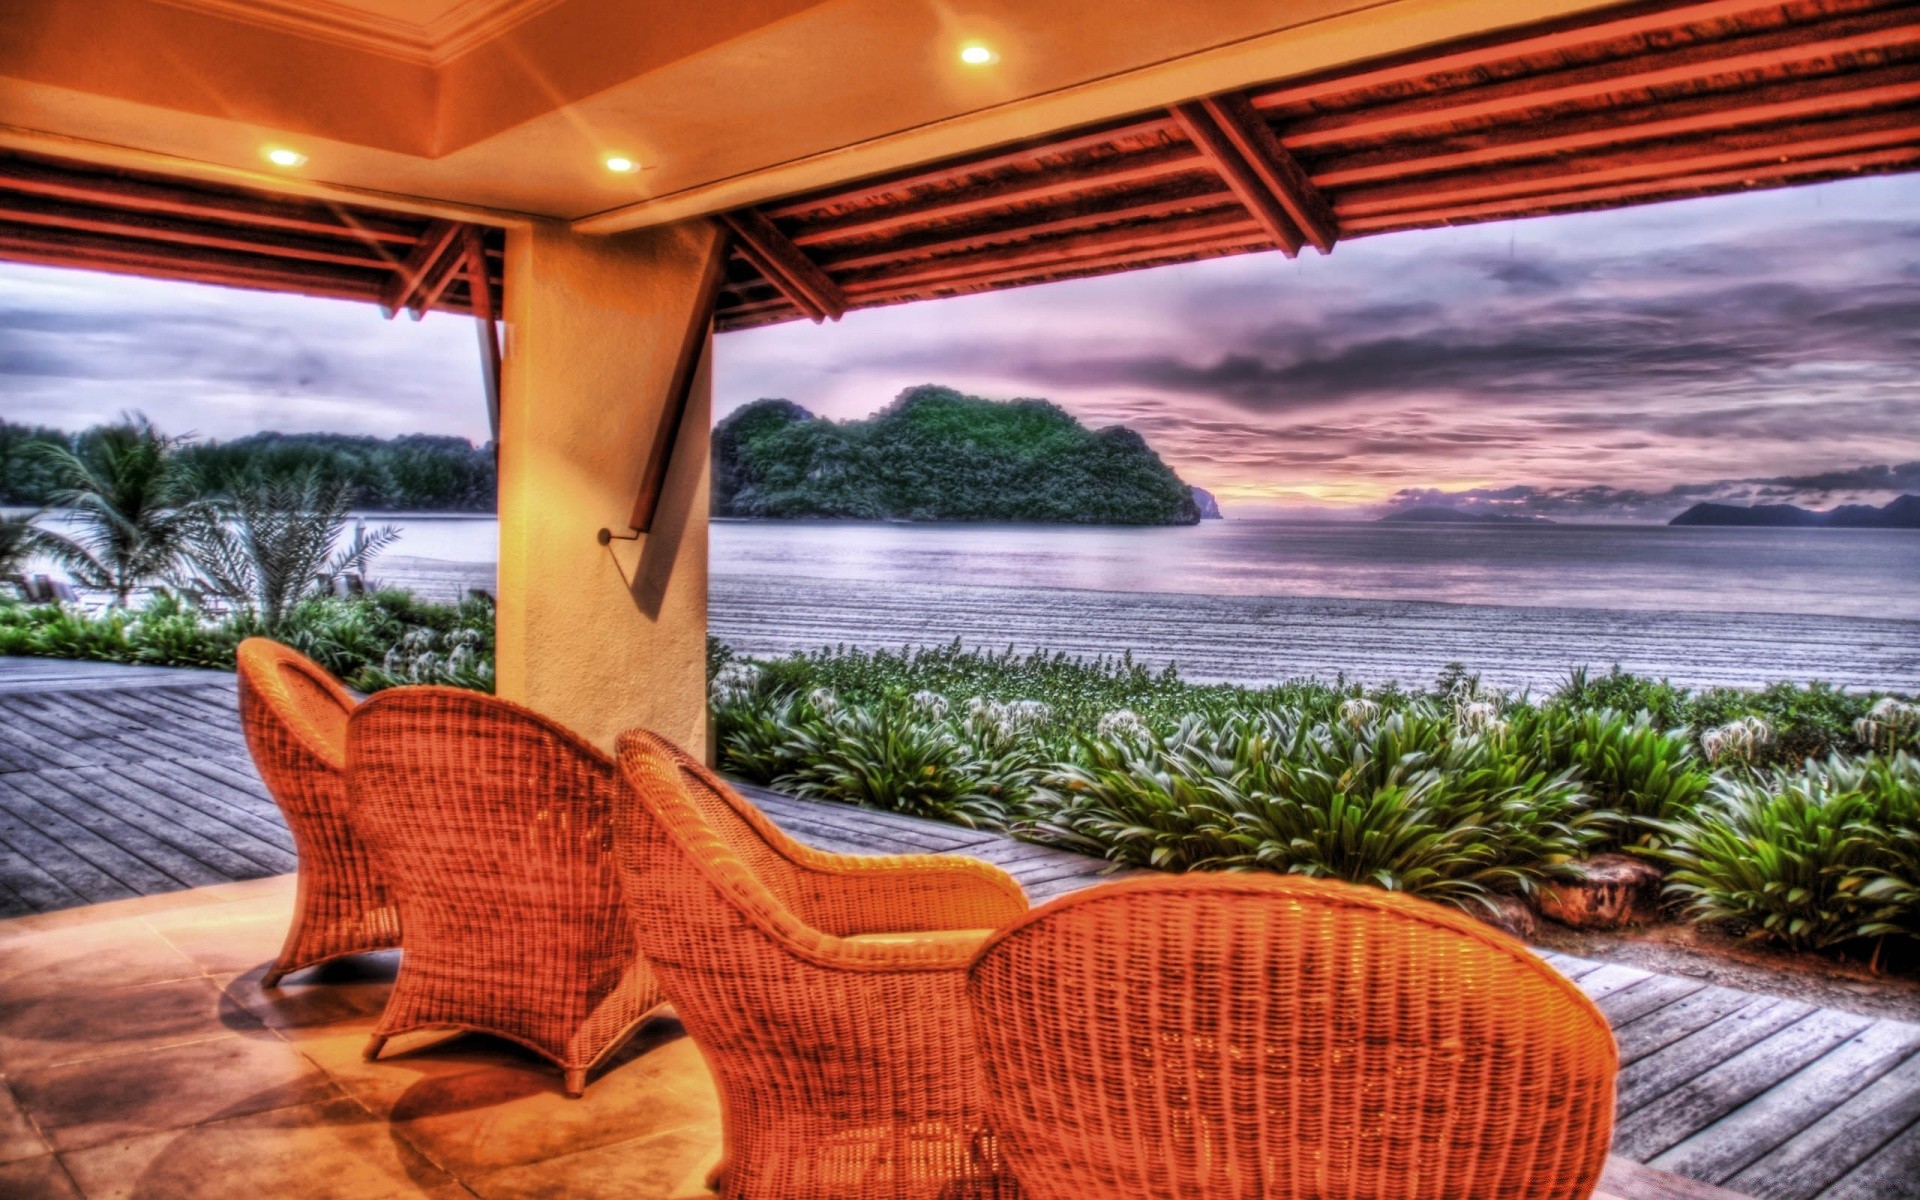 креатив стул курорт путешествия релаксация диван лето небо тропический отпуск отель солнце роскошные океан природа пляж мебель древесины на открытом воздухе воды